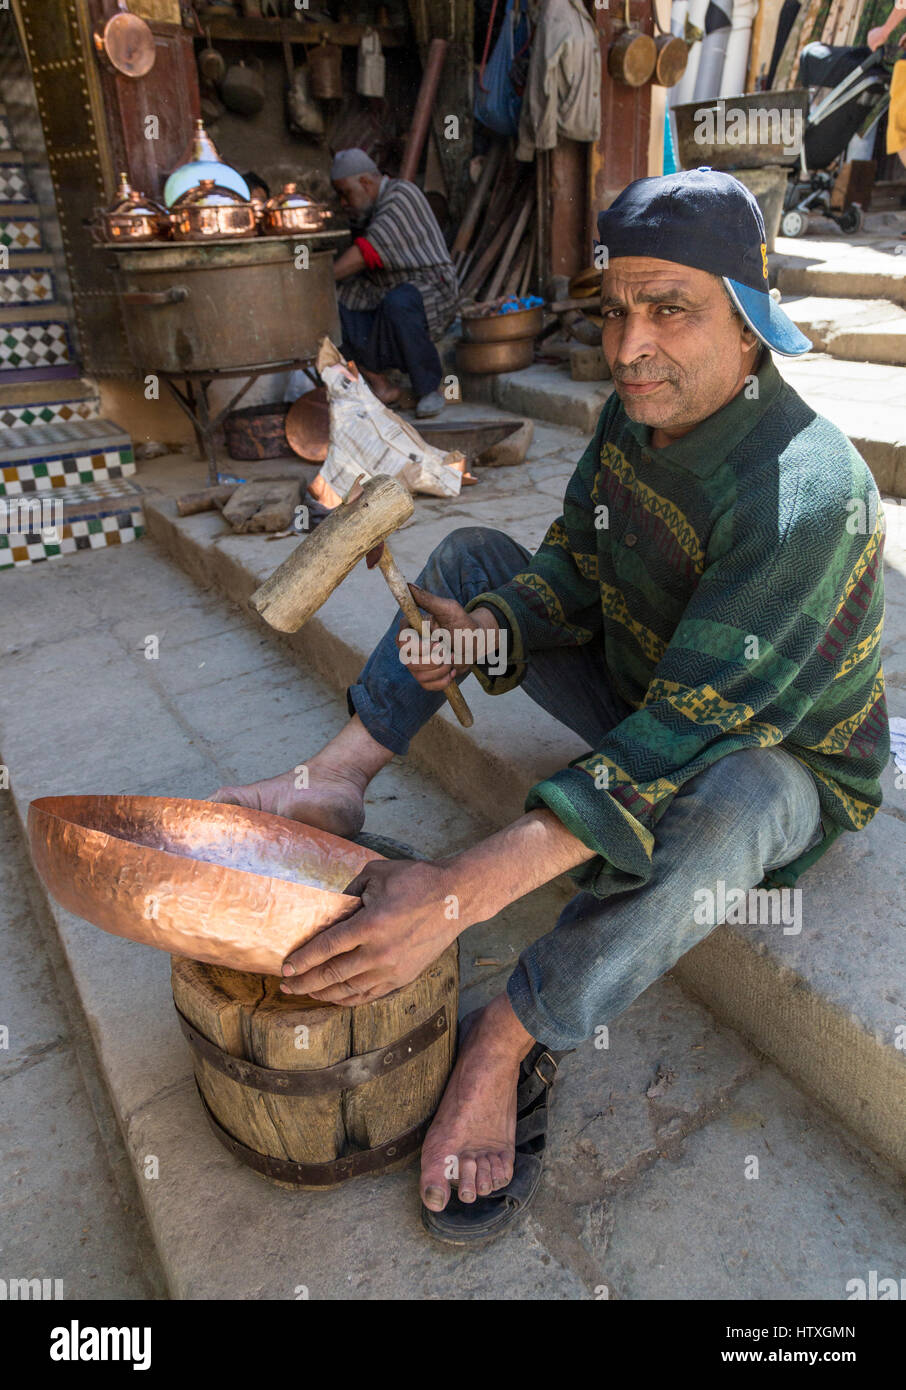 Fes, Marocco. Posizionare Seffarine. Martellatura artigiano un recipiente di rame in forma. Foto Stock